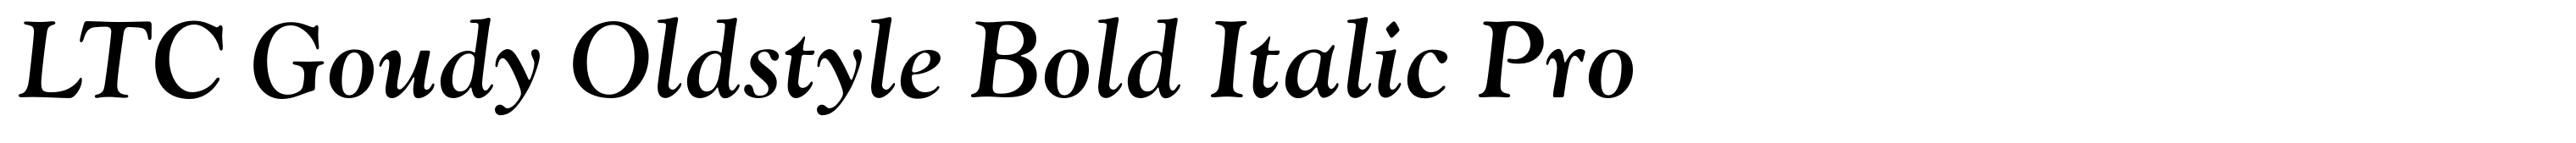 LTC Goudy Oldstyle Bold Italic Pro